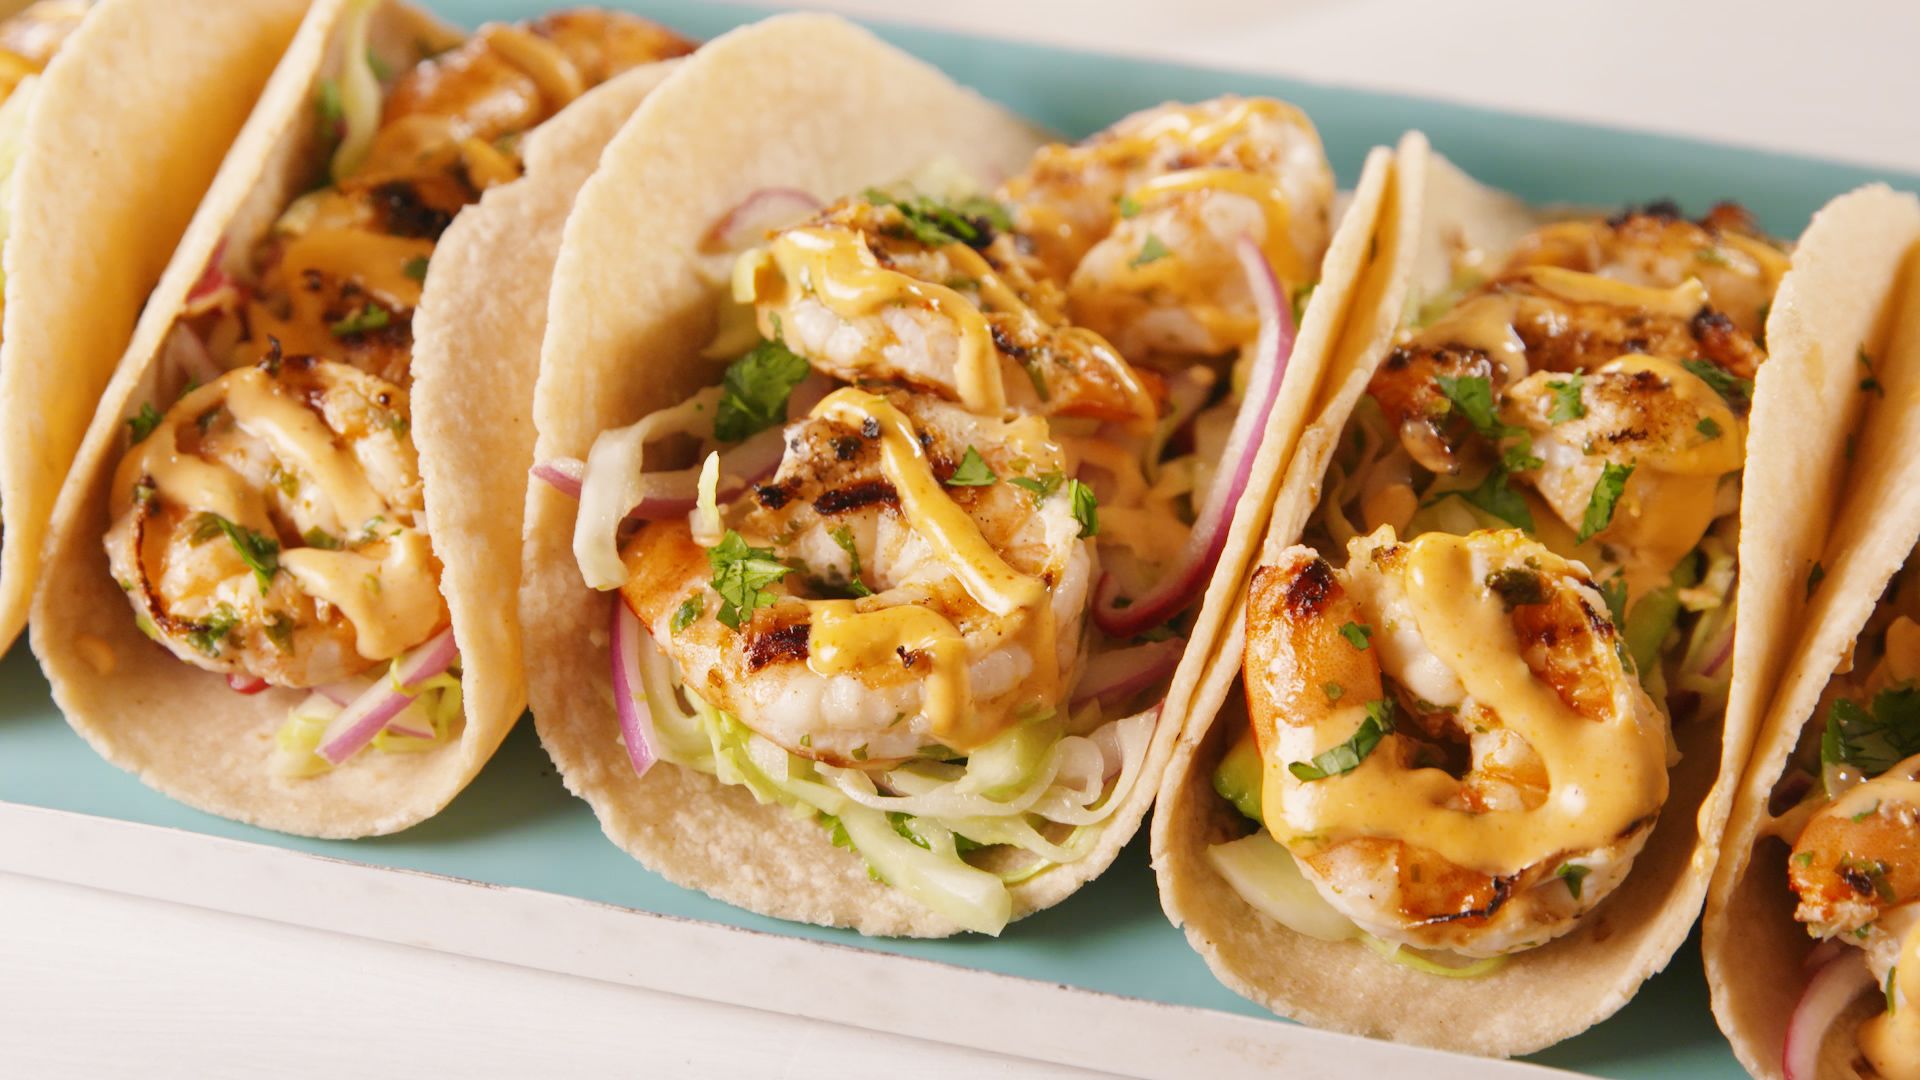 Best Cilantro-Lime Shrimp Tacos Recipe - How to Make Cilantro-Shrimp Tacos